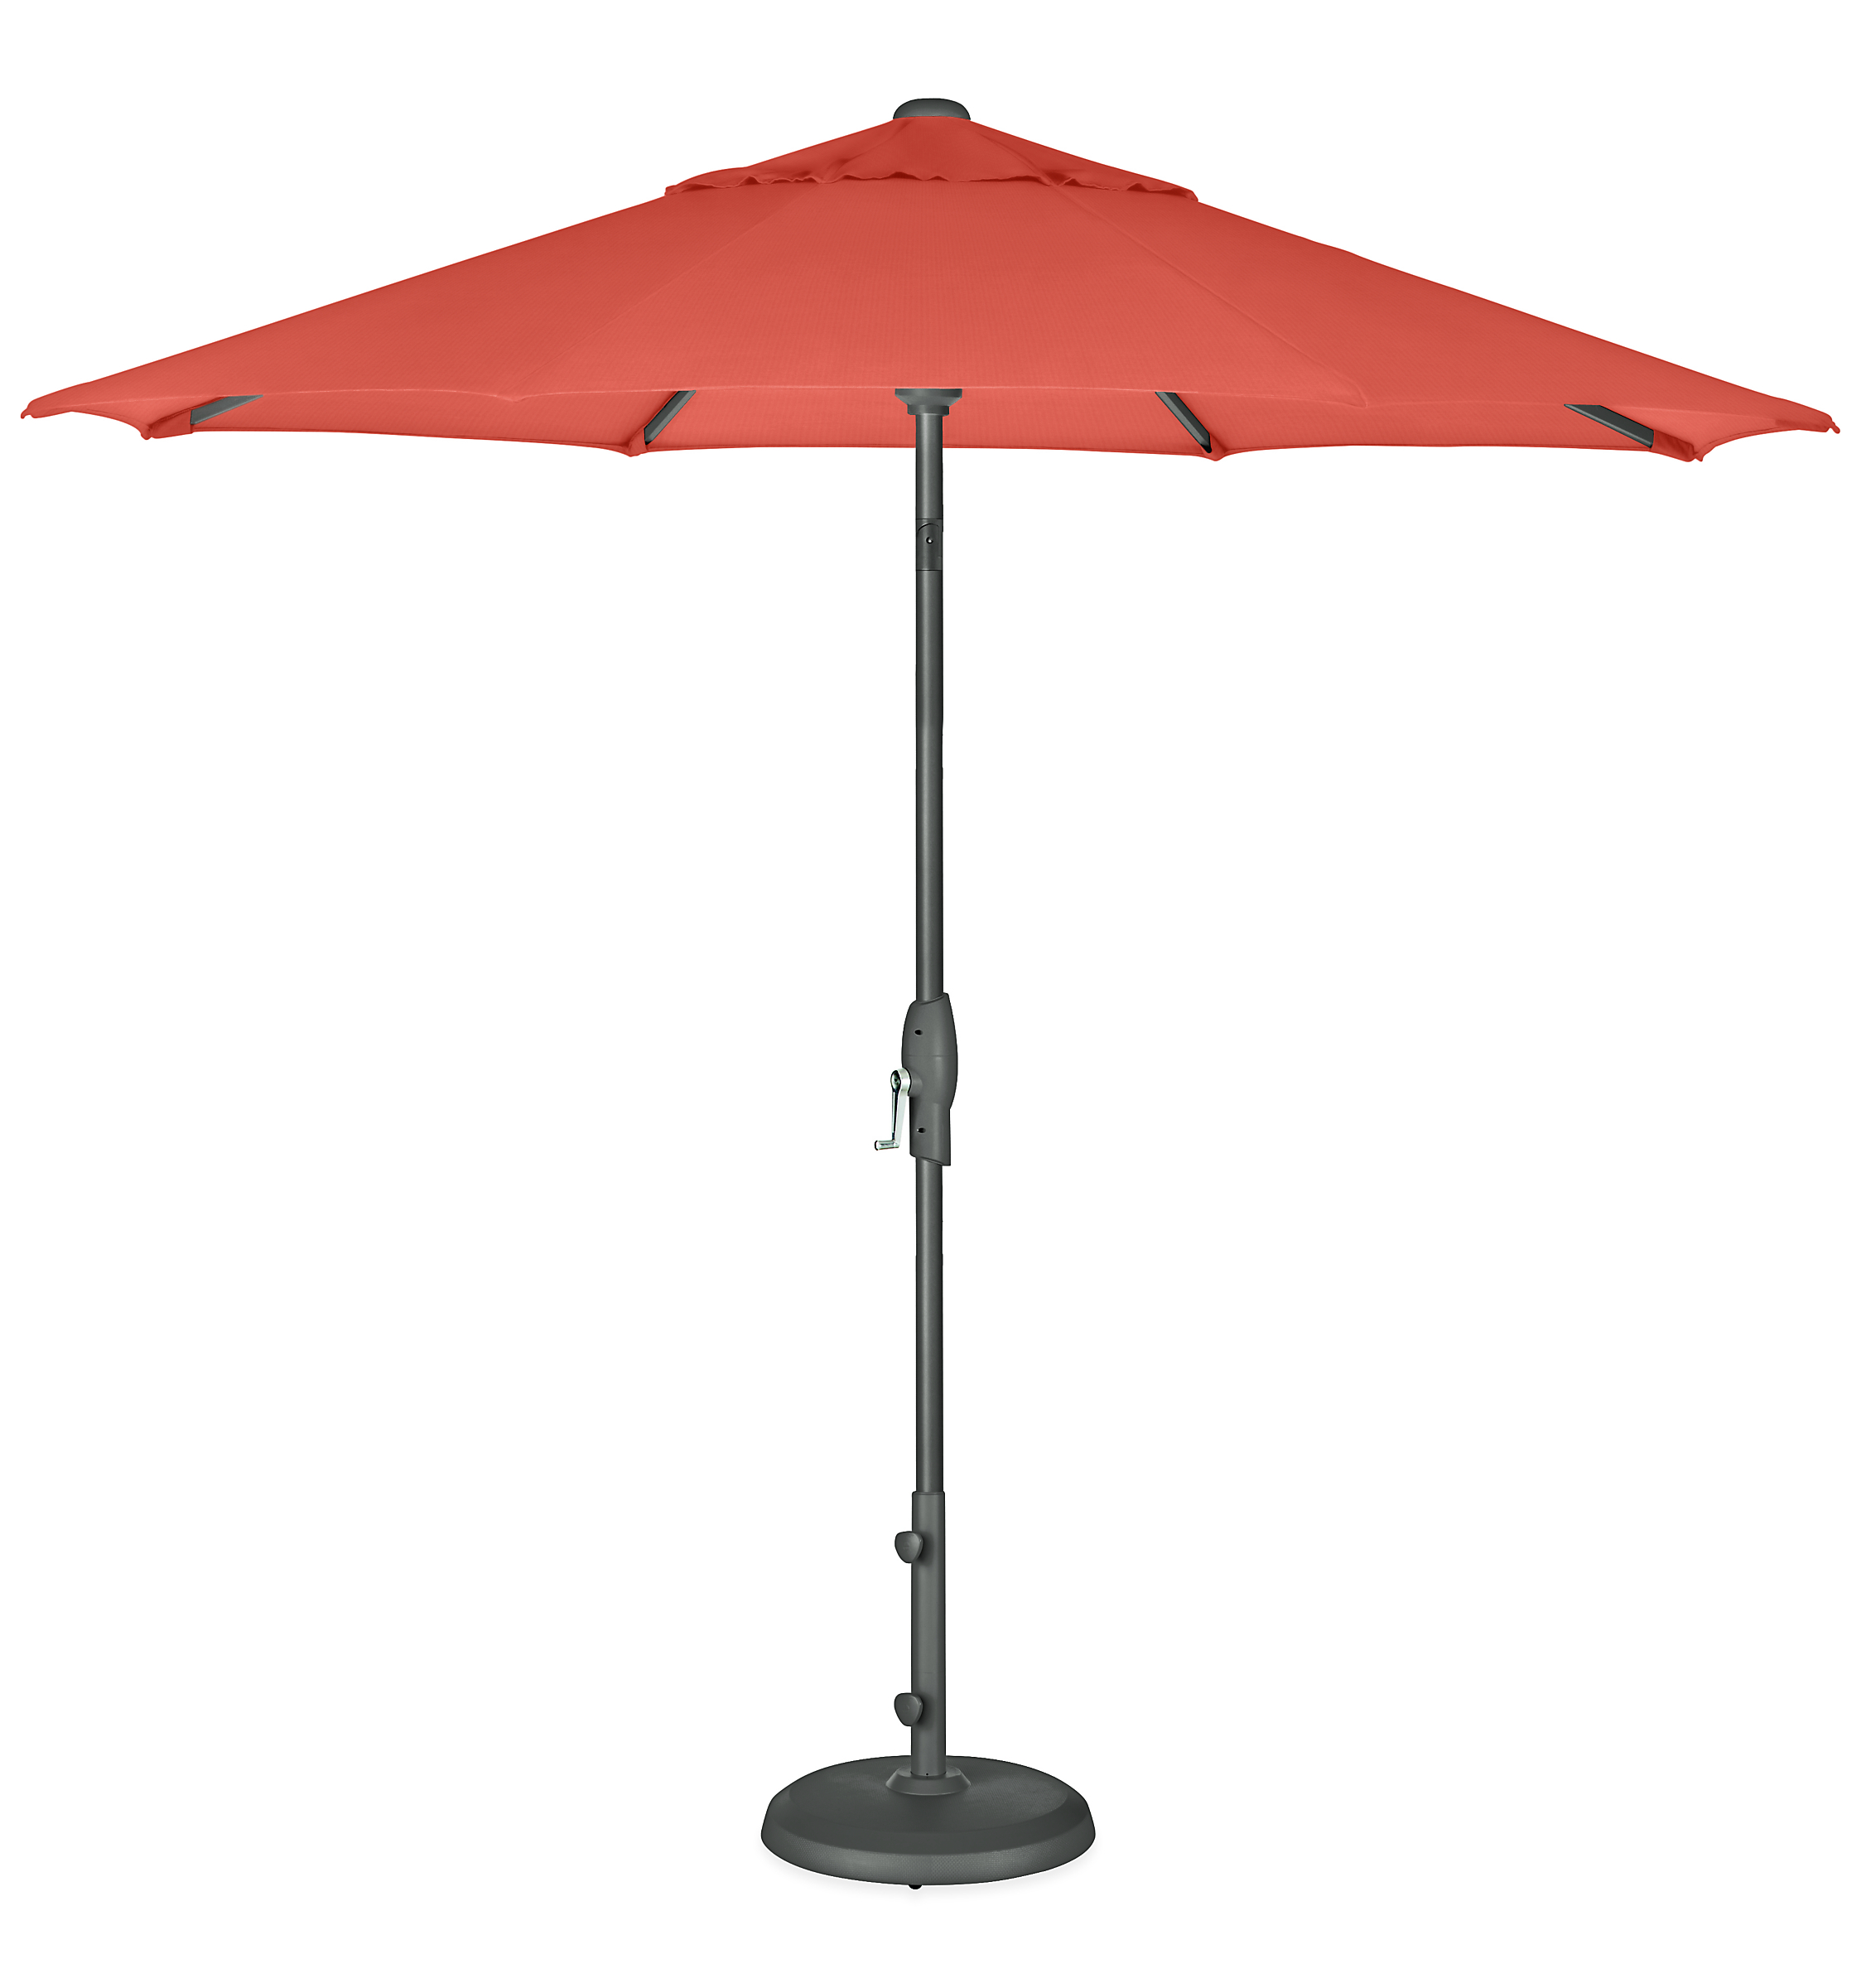 Oahu 9' Round Patio Umbrella in Sunbrella Canvas Orange with Graphite Base